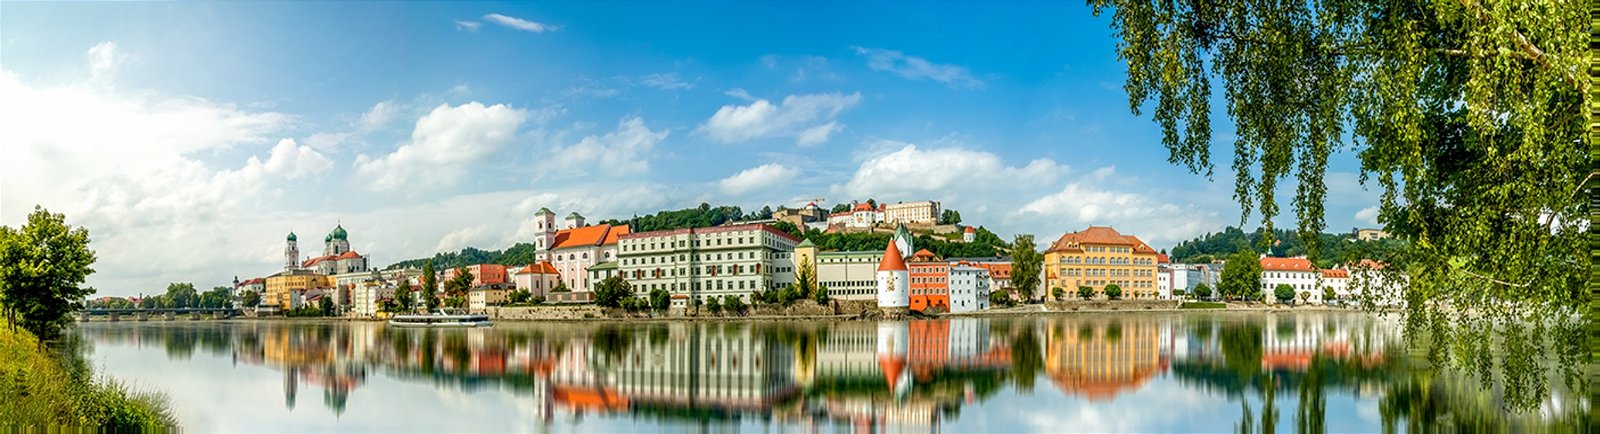 Städtereise nach Passau